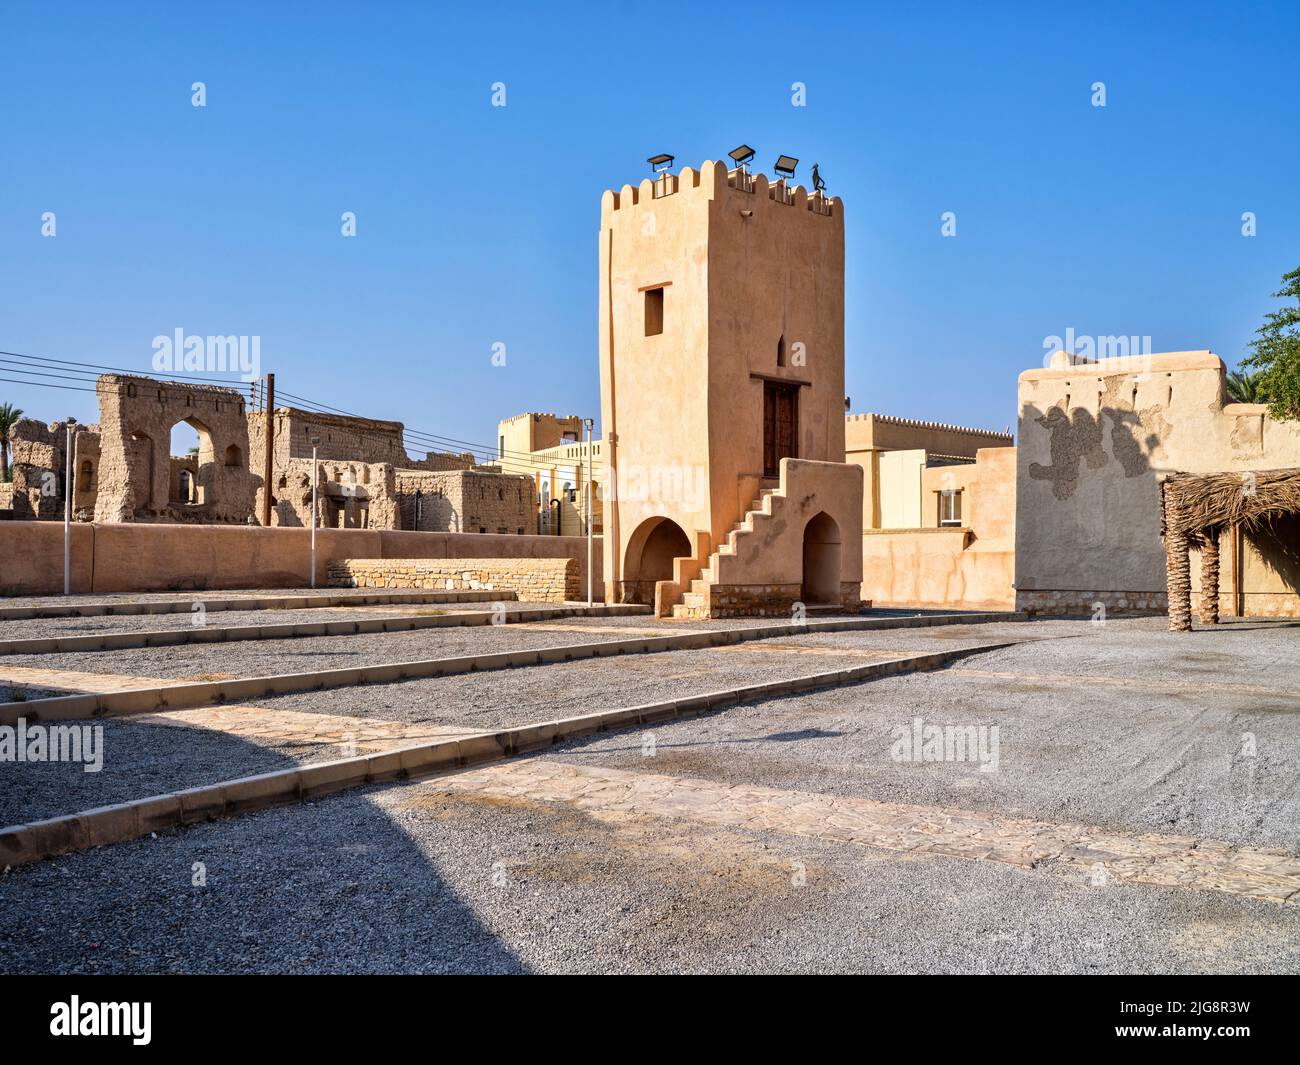 Colonades at the historic souq of Nizwa, Oman. Stock Photo